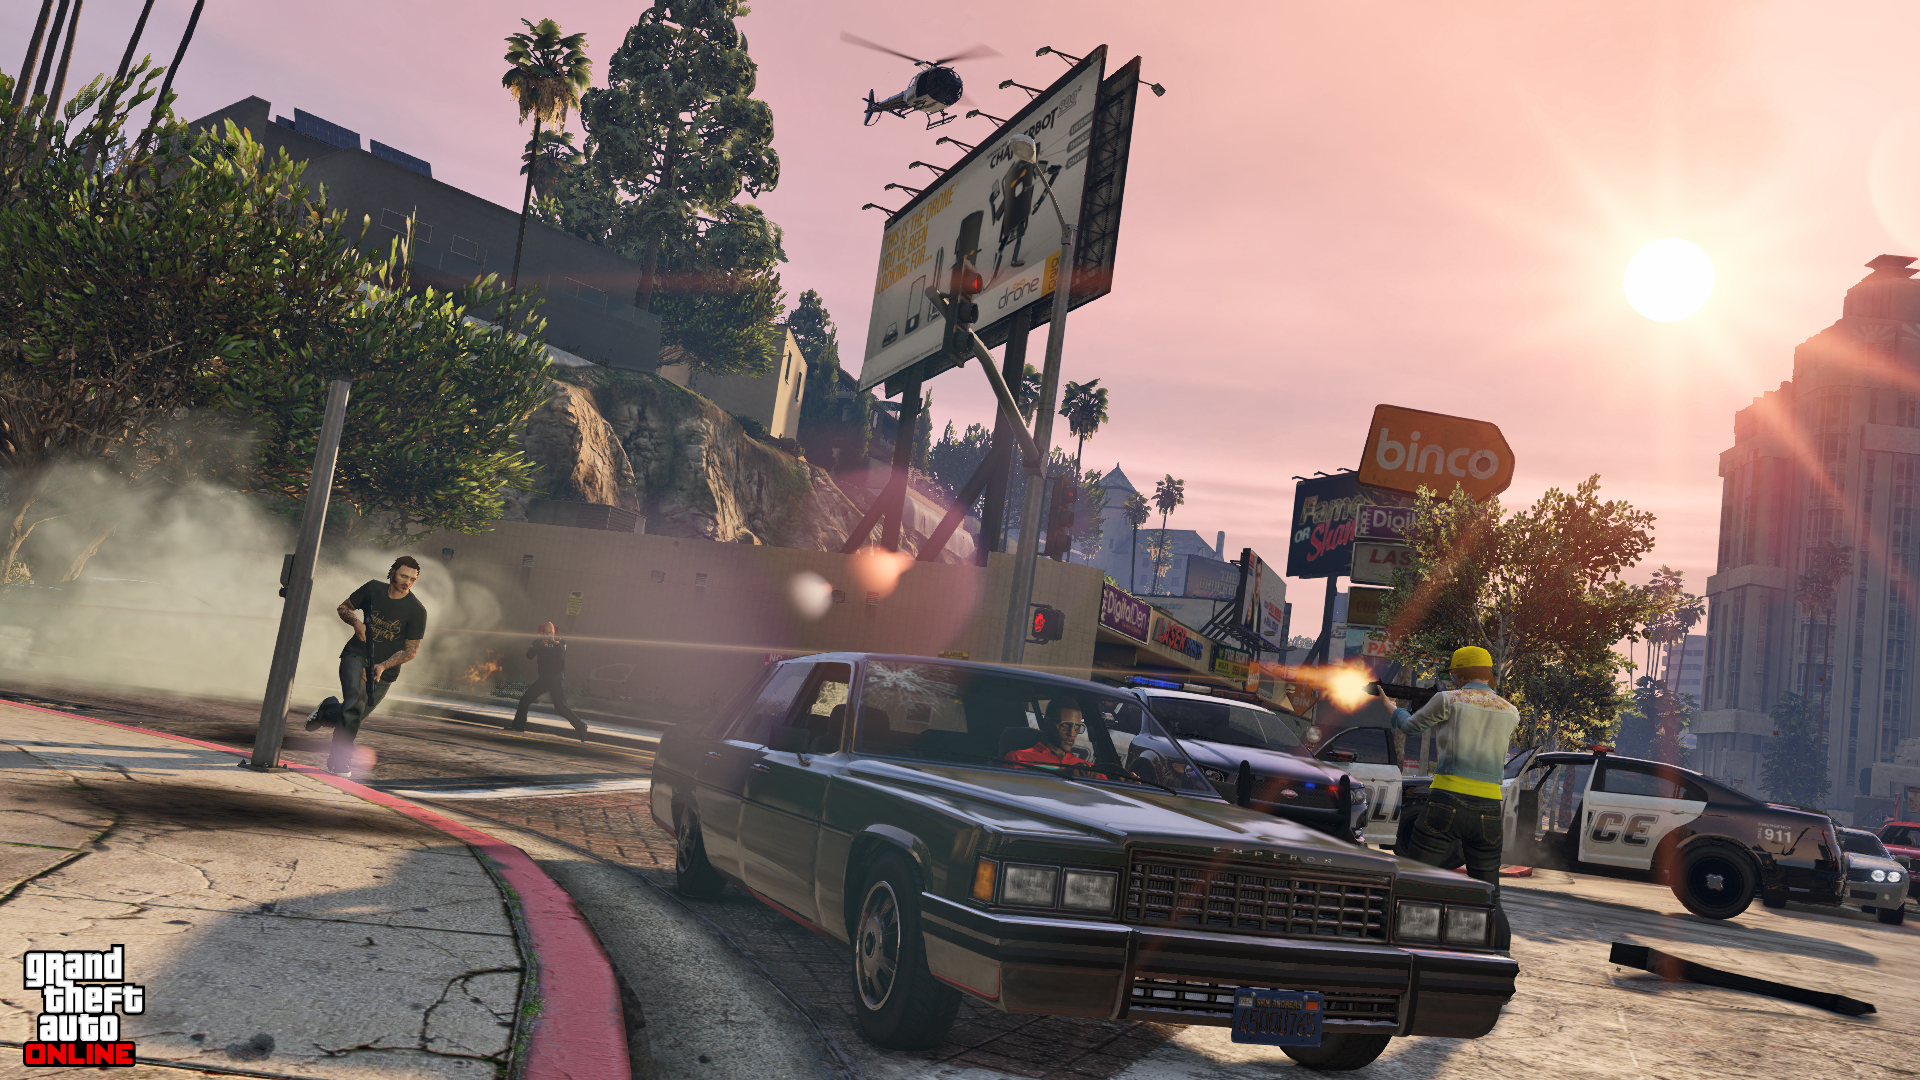 Вместе играть в гта. Grand Theft auto v igri. Grand Theft auto ГТА 5. Grand Theft auto игра 5. ГТА 5 Скриншоты.